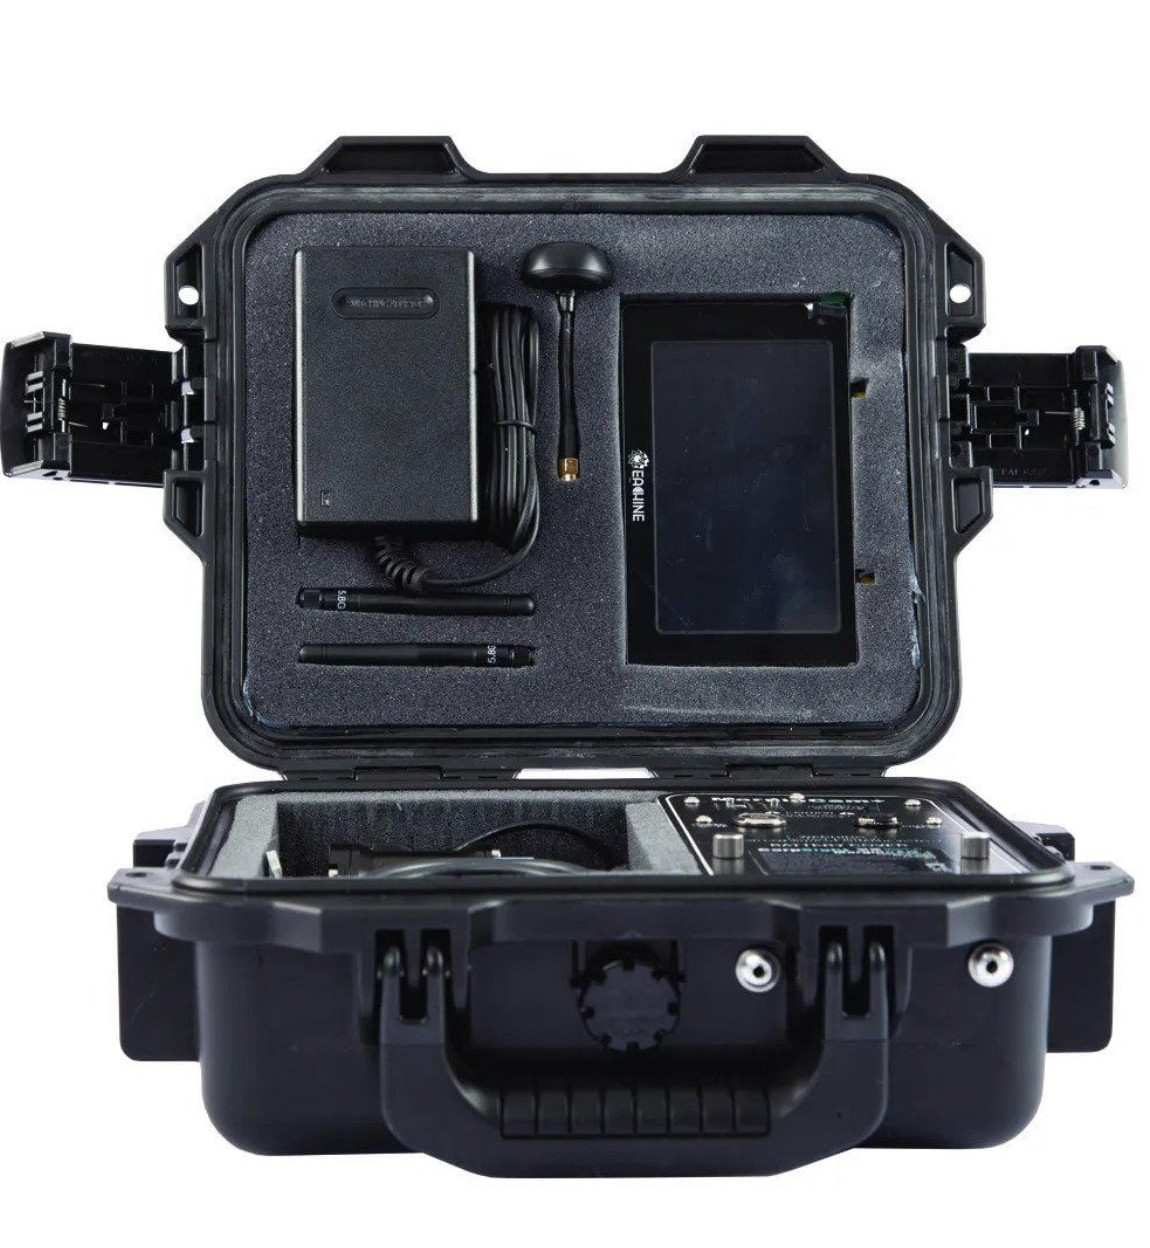 Le kit de caméra de pêche sous-marine en temps réel CarpSight MarginCAM+